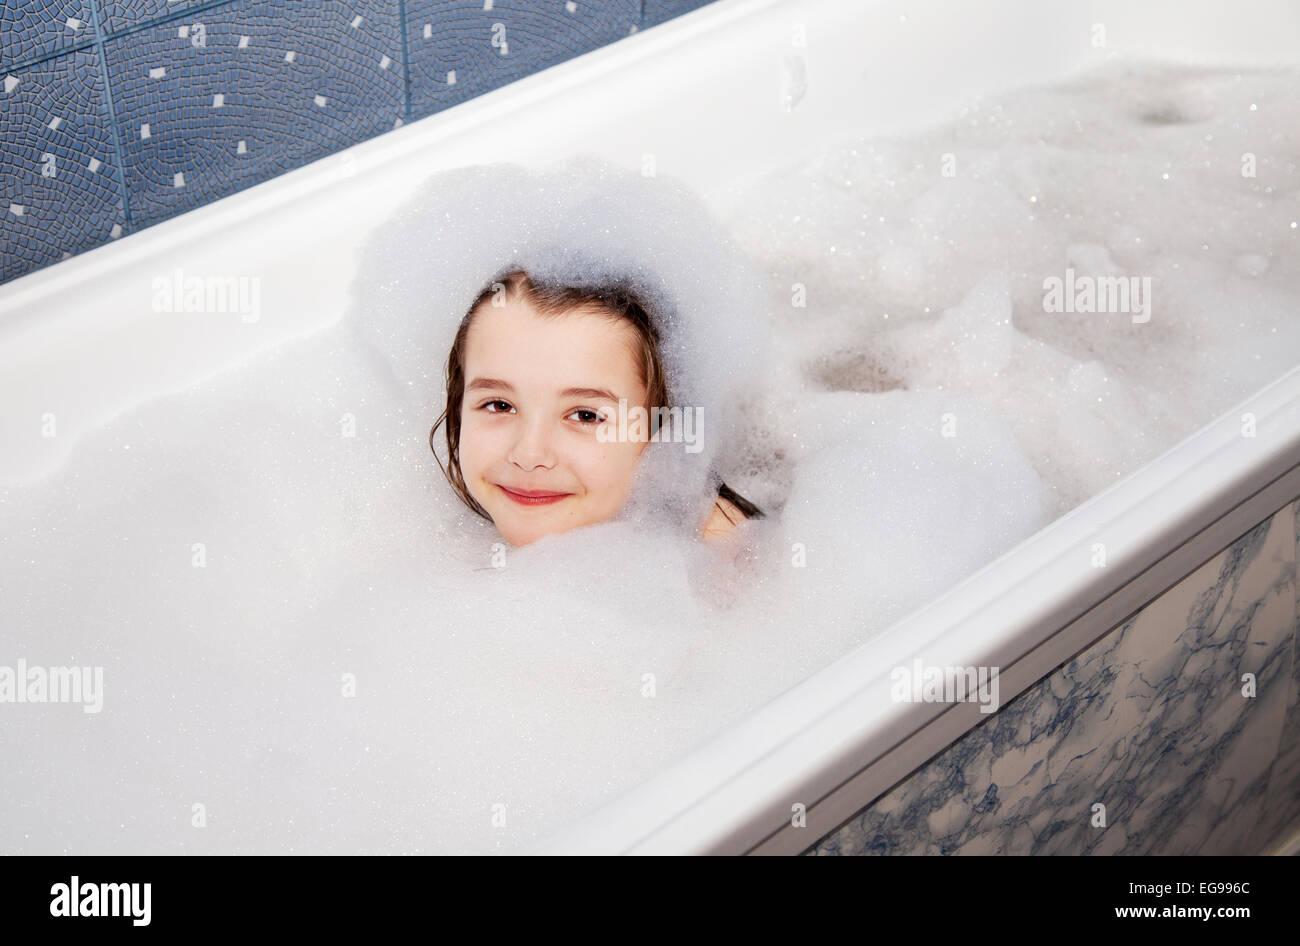 эротика голых девочек в ванной фото 71